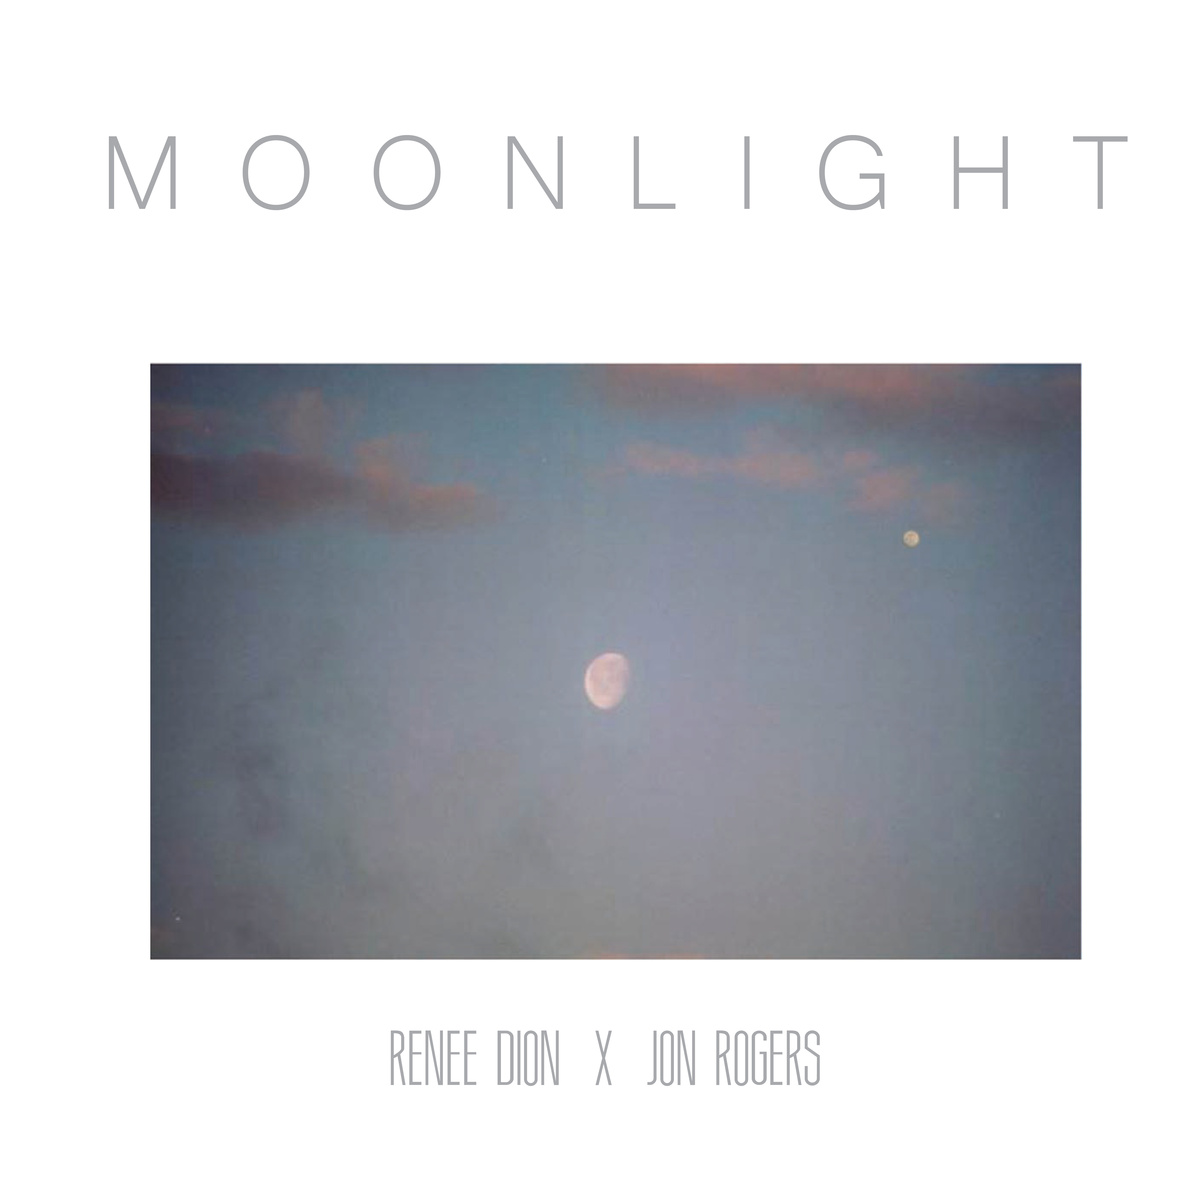 Renee Dion & Jon Rogers - "Moonlight" (Release) & "51st & Cornell" (Video)